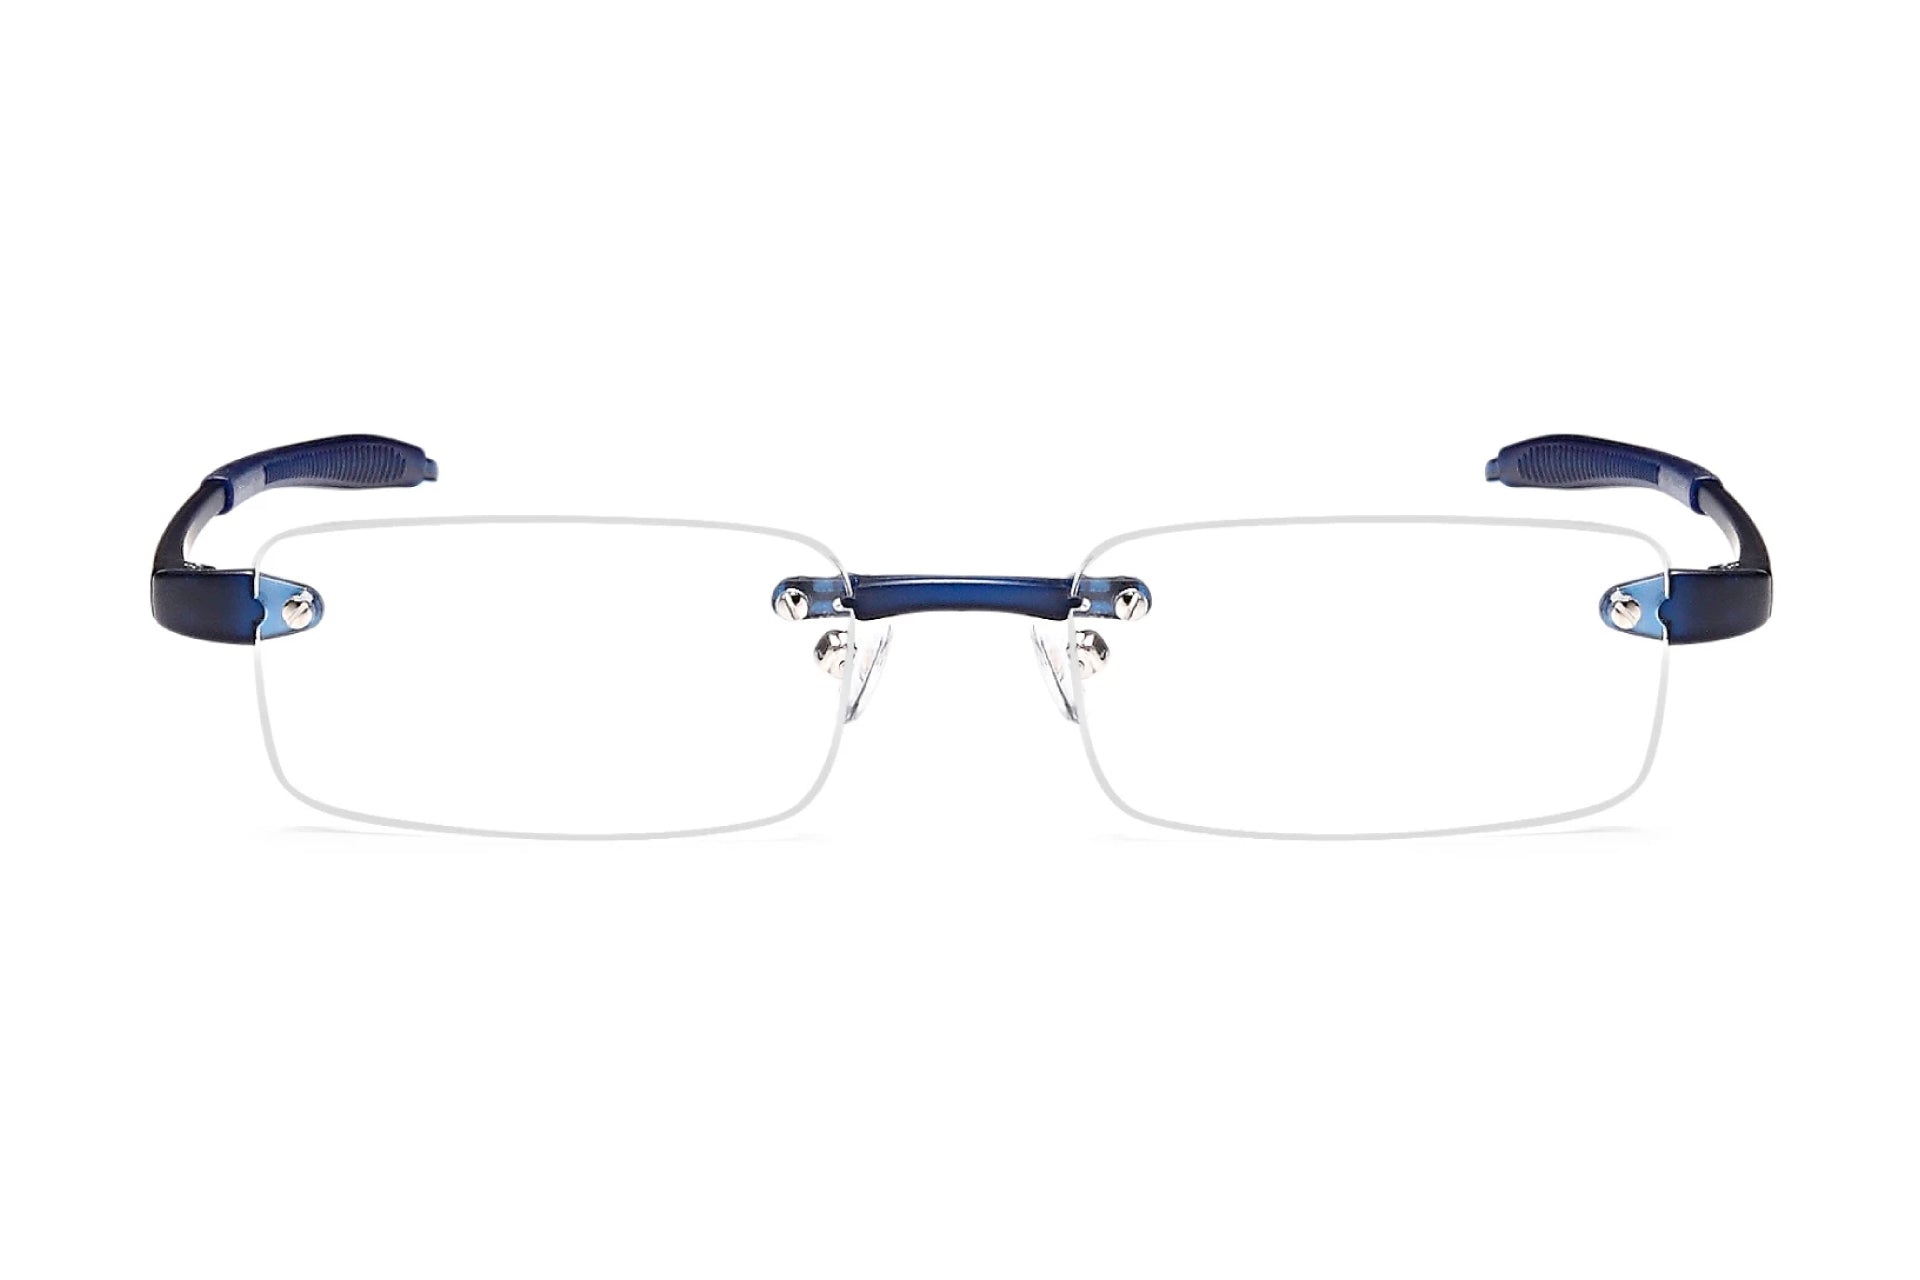 2 PAIR Bifocal Sunglasses Reader Frame Men Women Lightweight